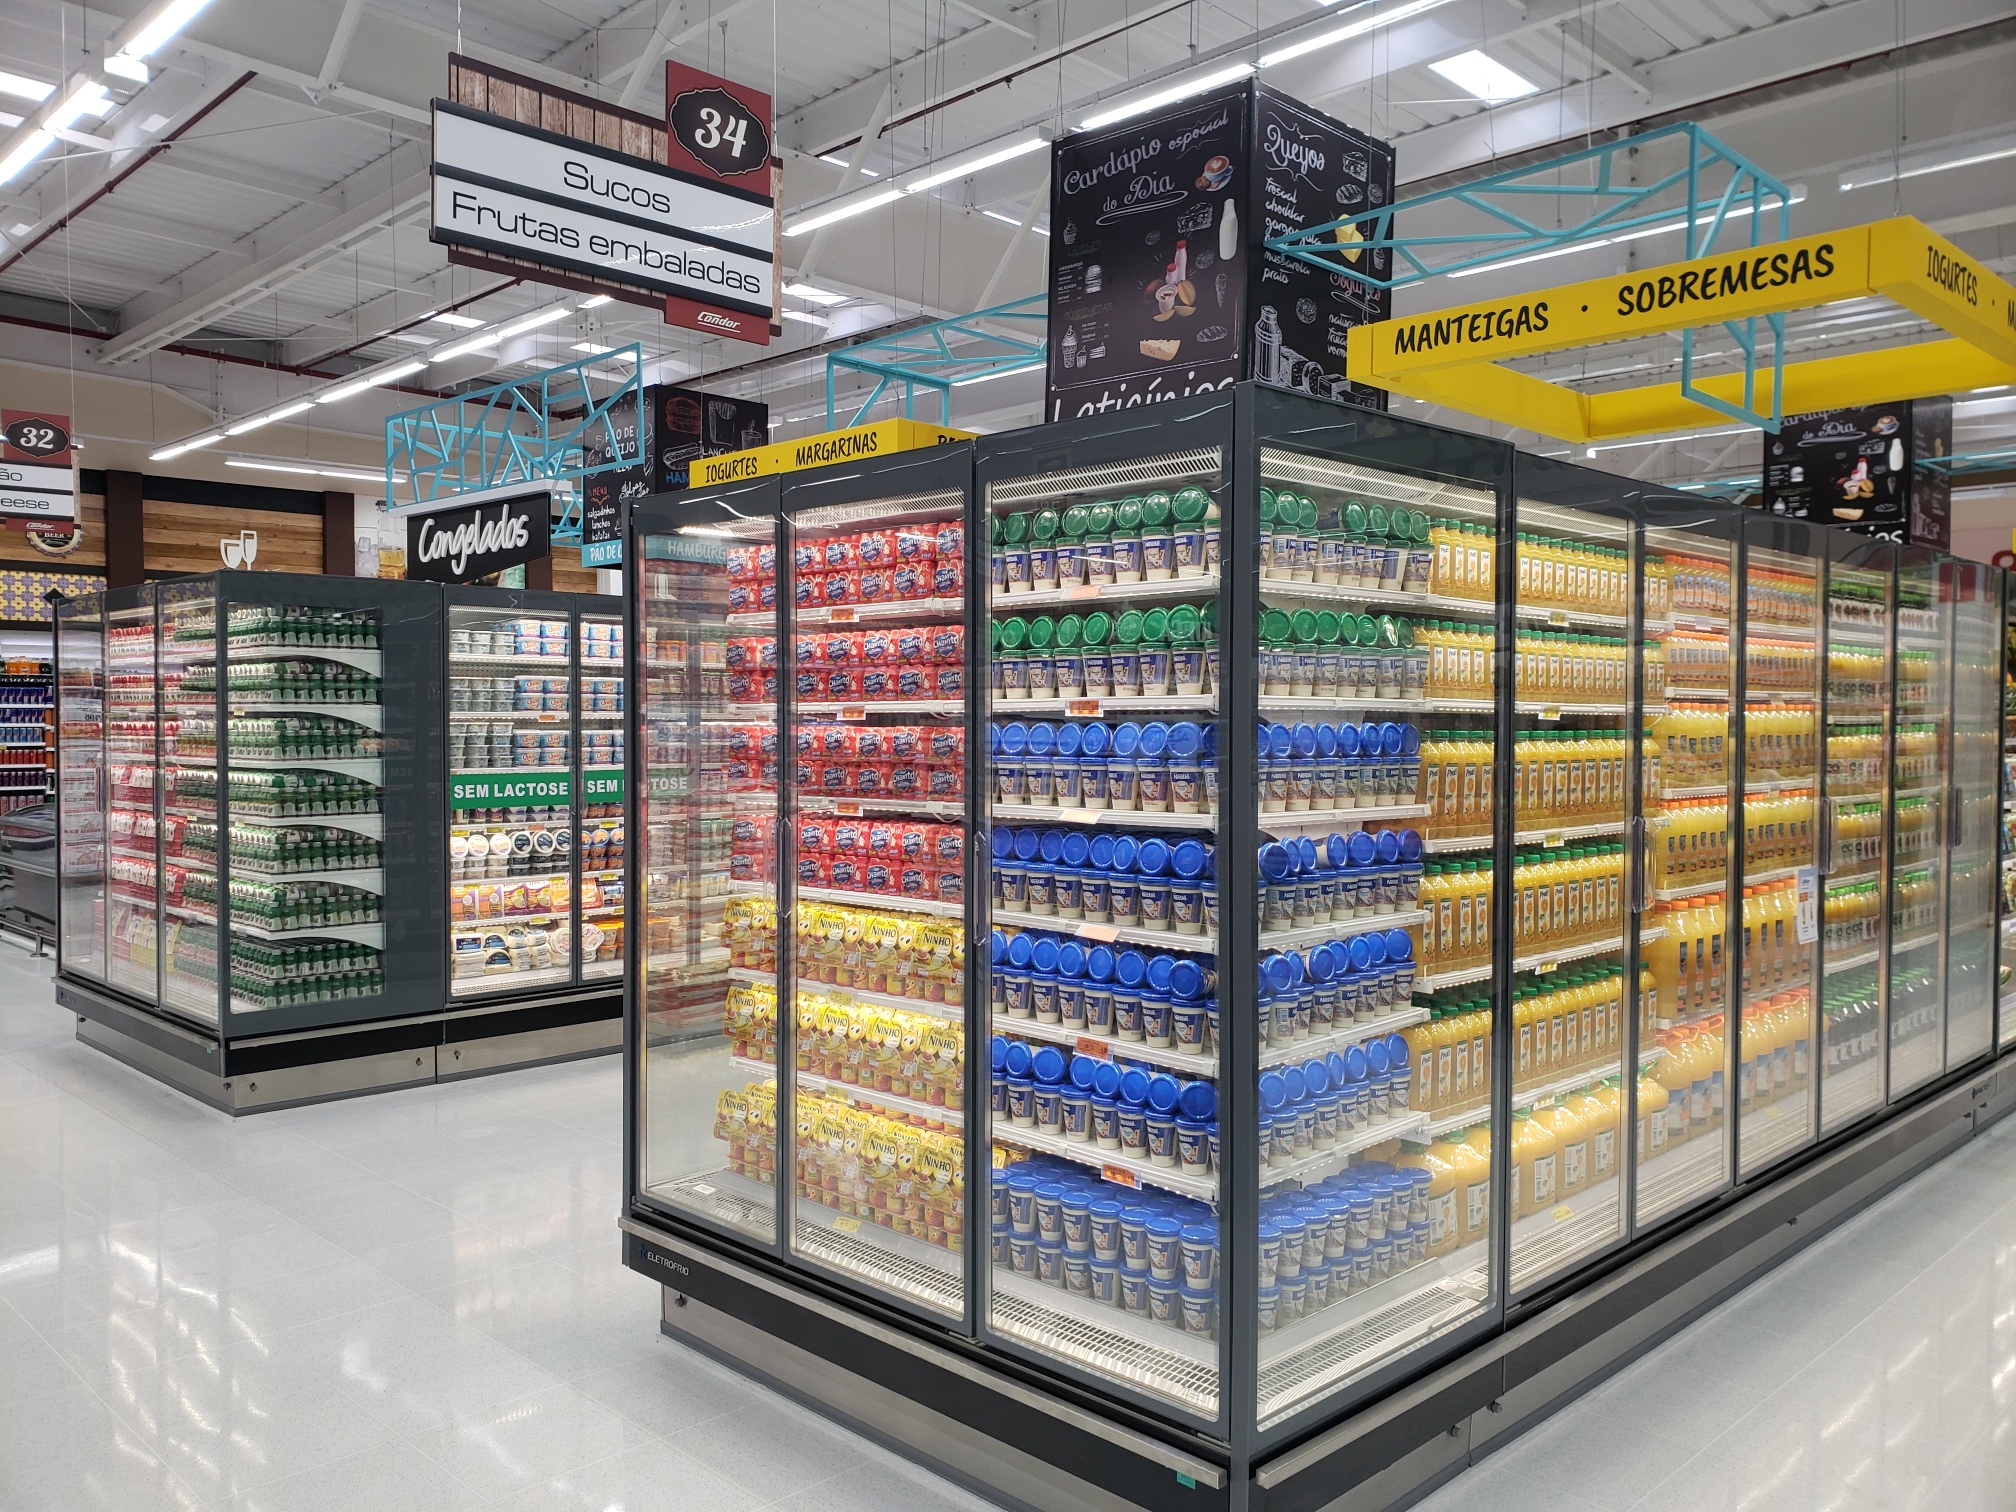 Mercosuper 2019: Eletrofrio apresenta tecnologia inédita e sustentável em feira supermercadista